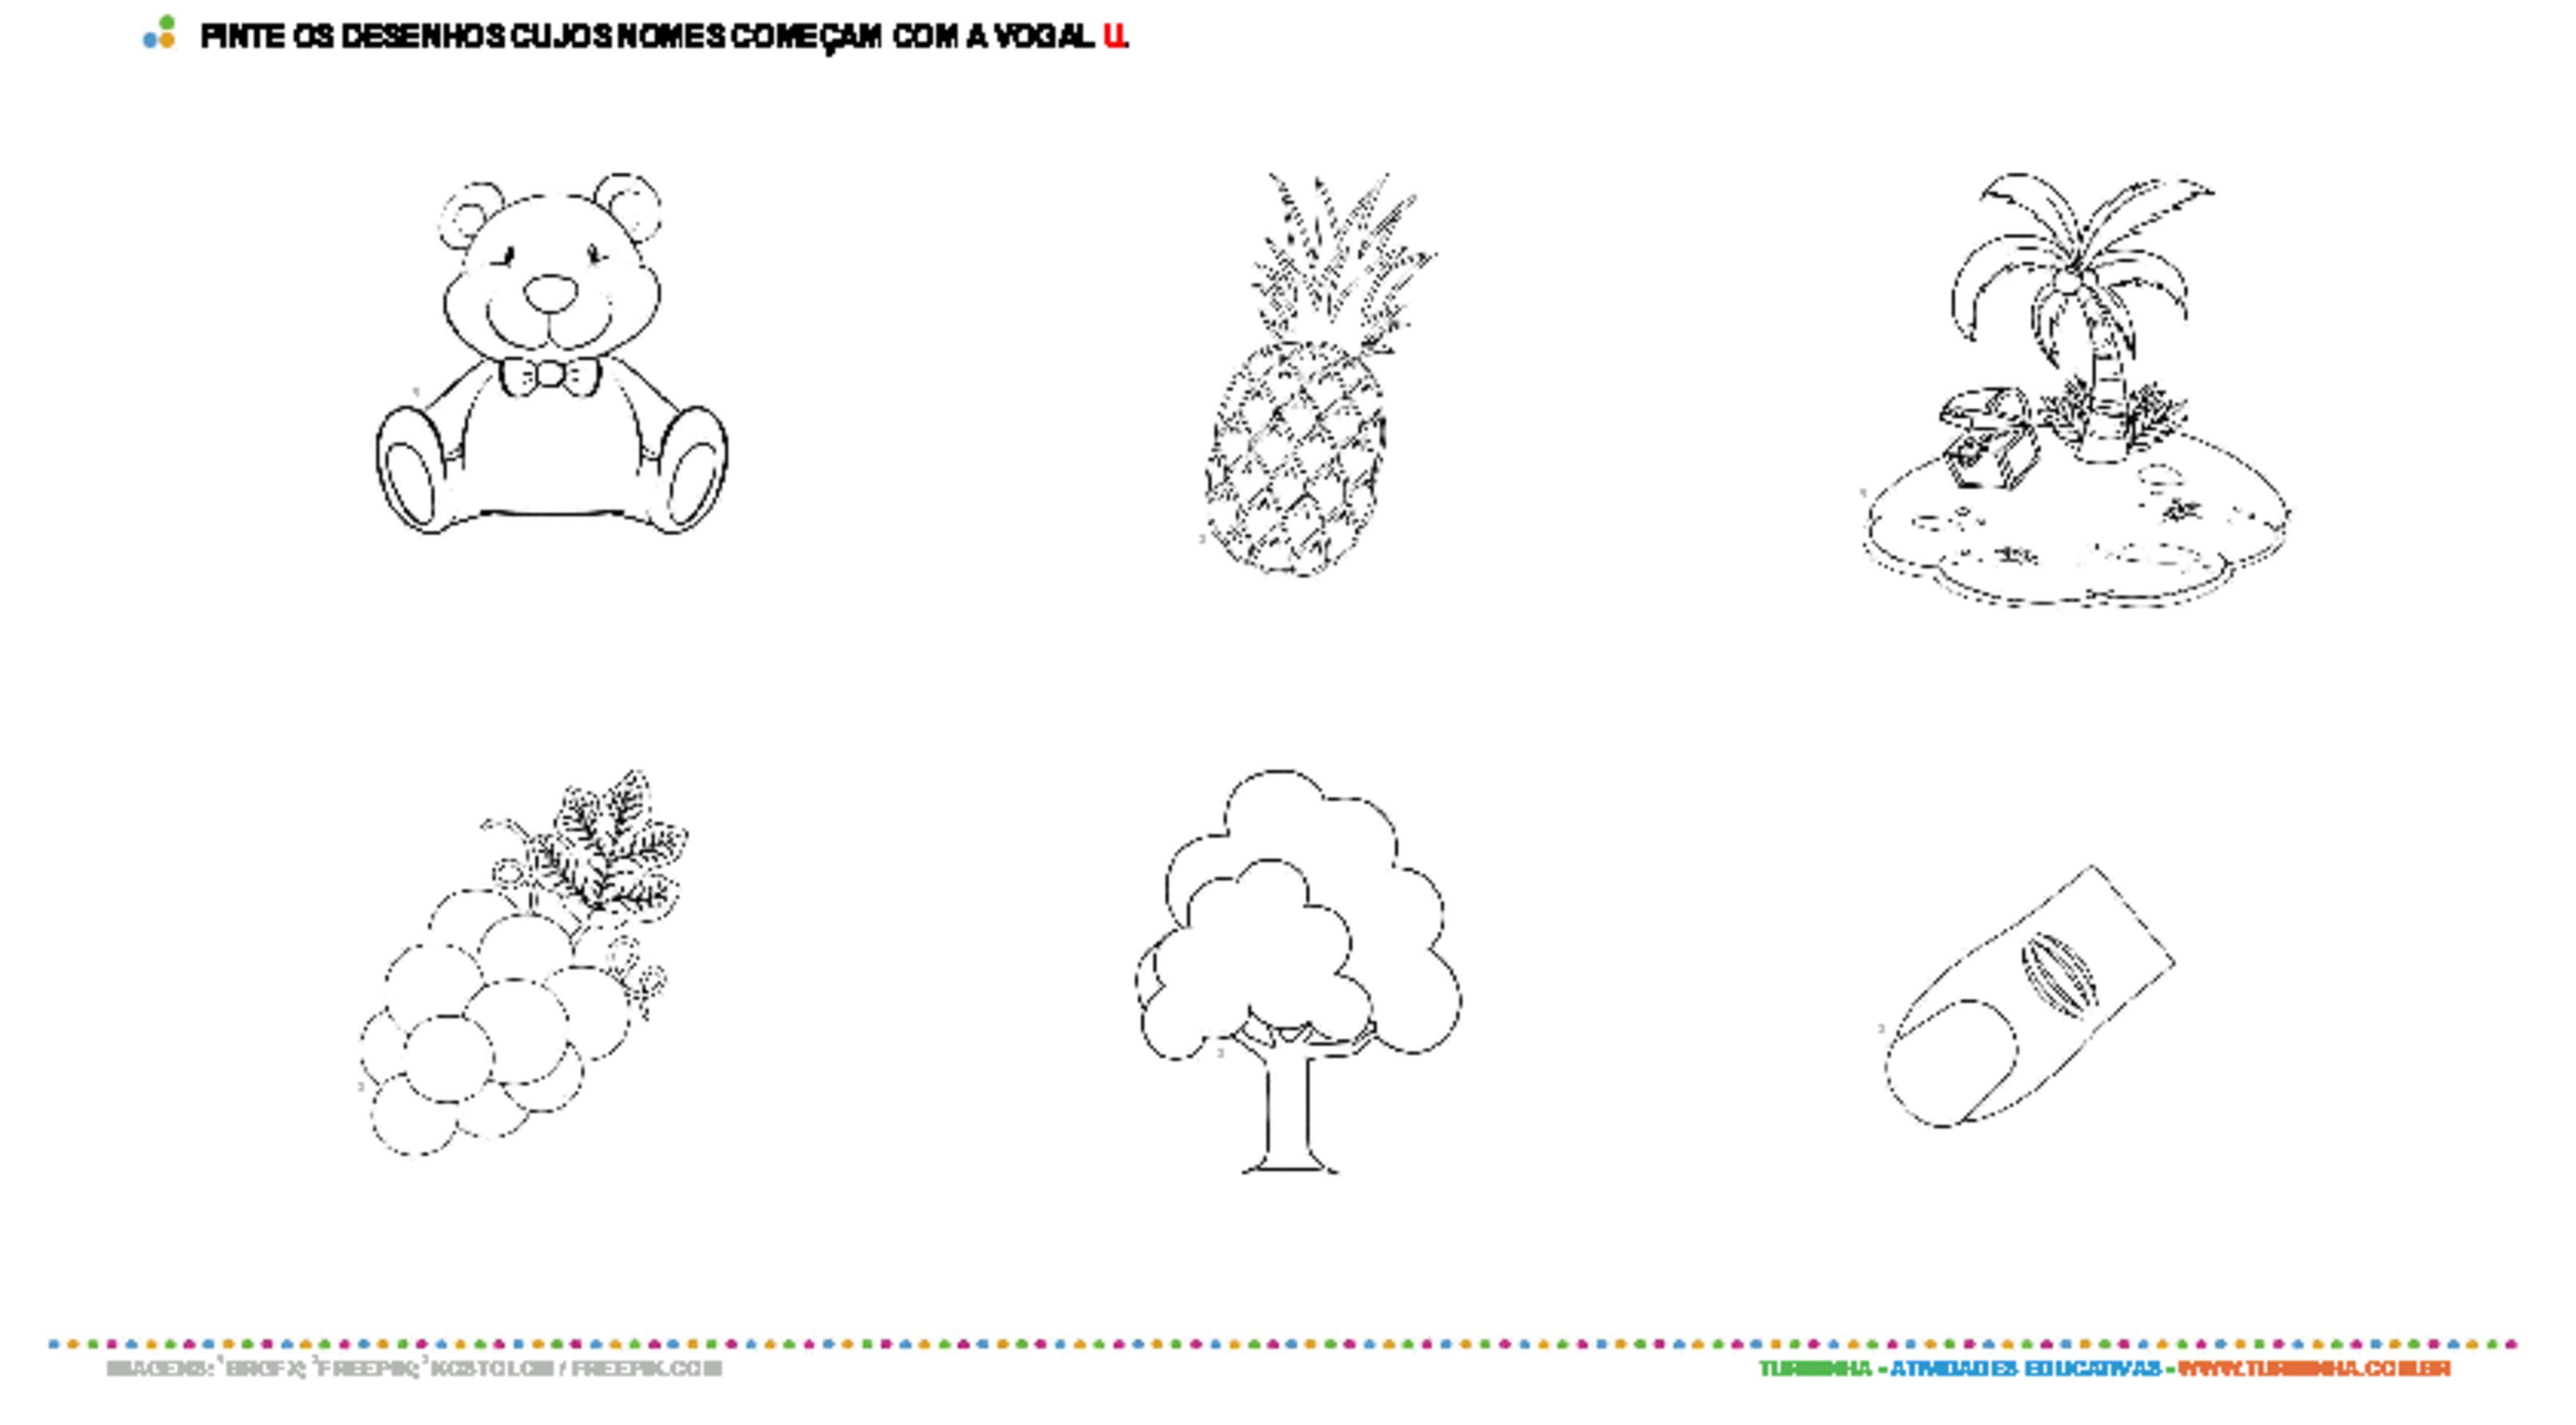 Colorindo desenhos com a vogal U - atividade educativa para Pré-Escola (4 e 5 anos)